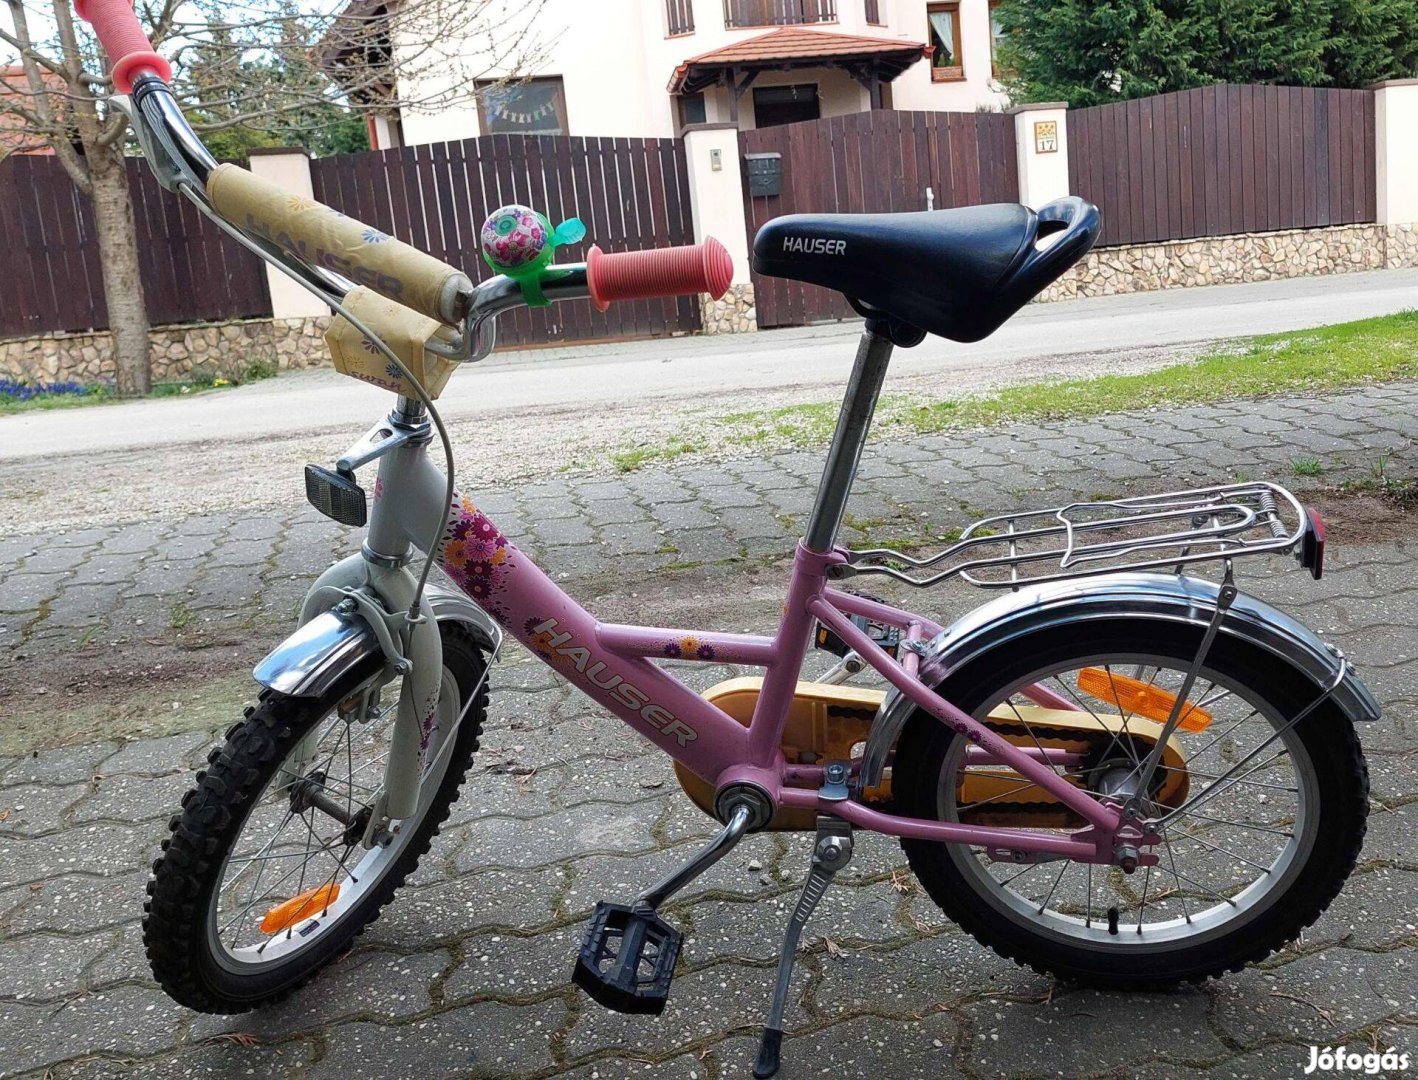 Hauser Swan leány bicikli eladó, 6-9 éves gyermek számára ideális